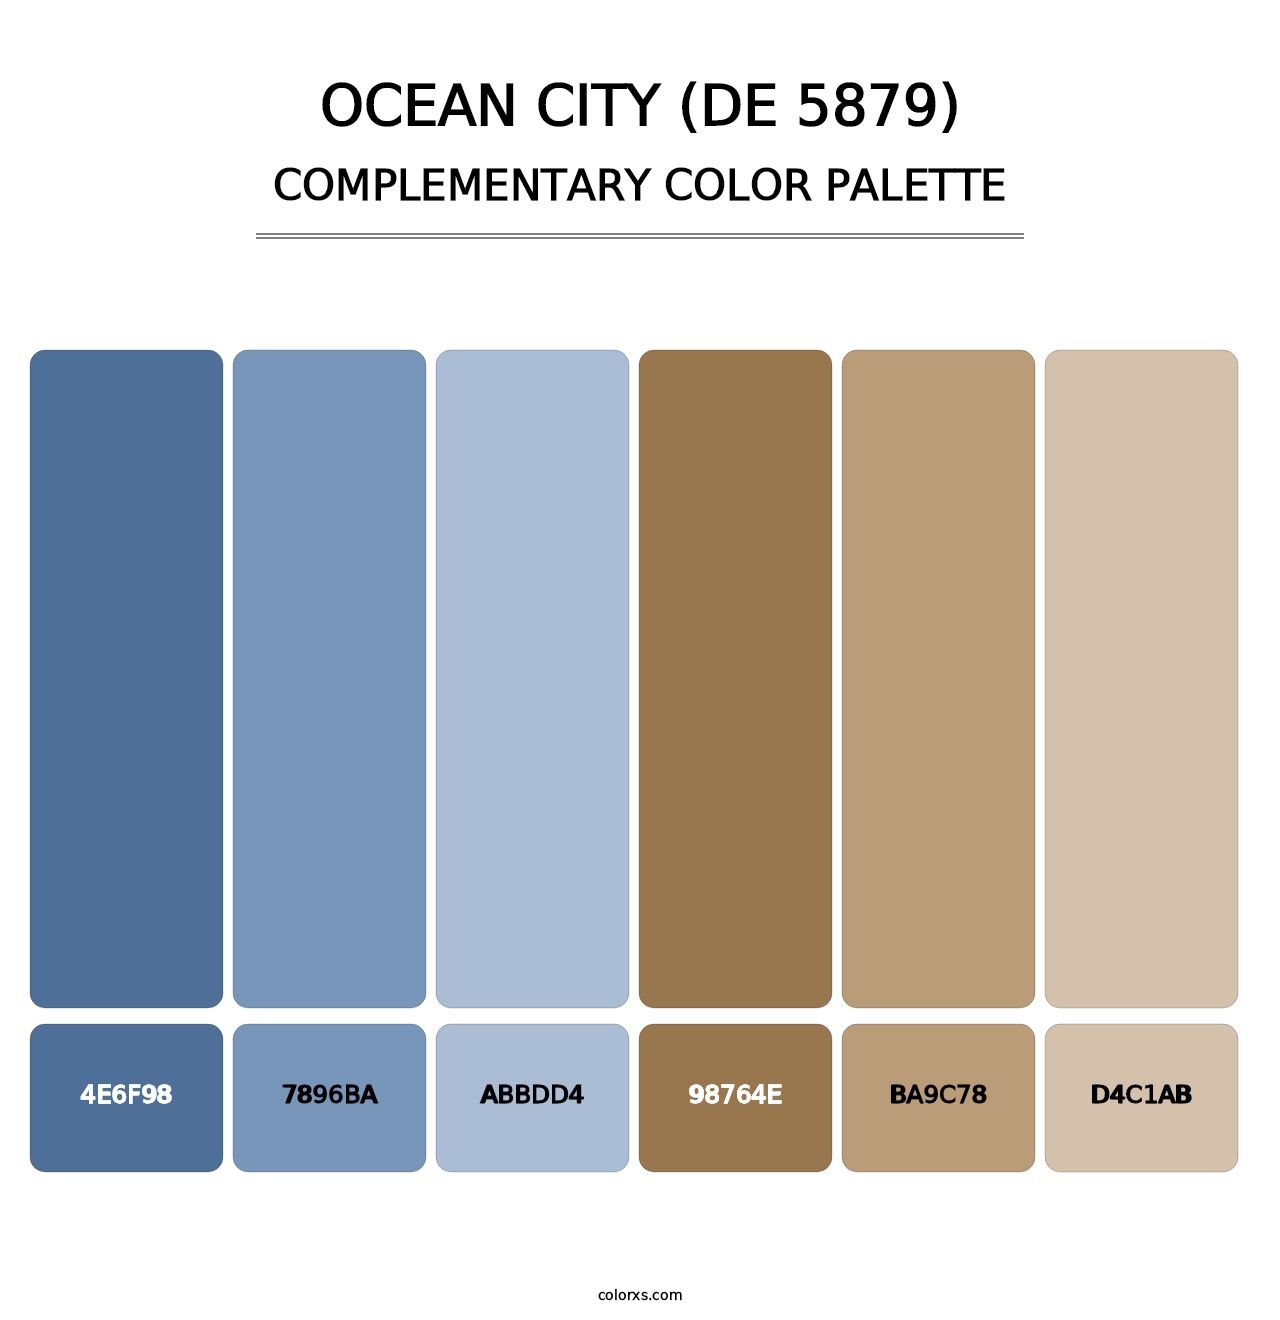 Ocean City (DE 5879) - Complementary Color Palette